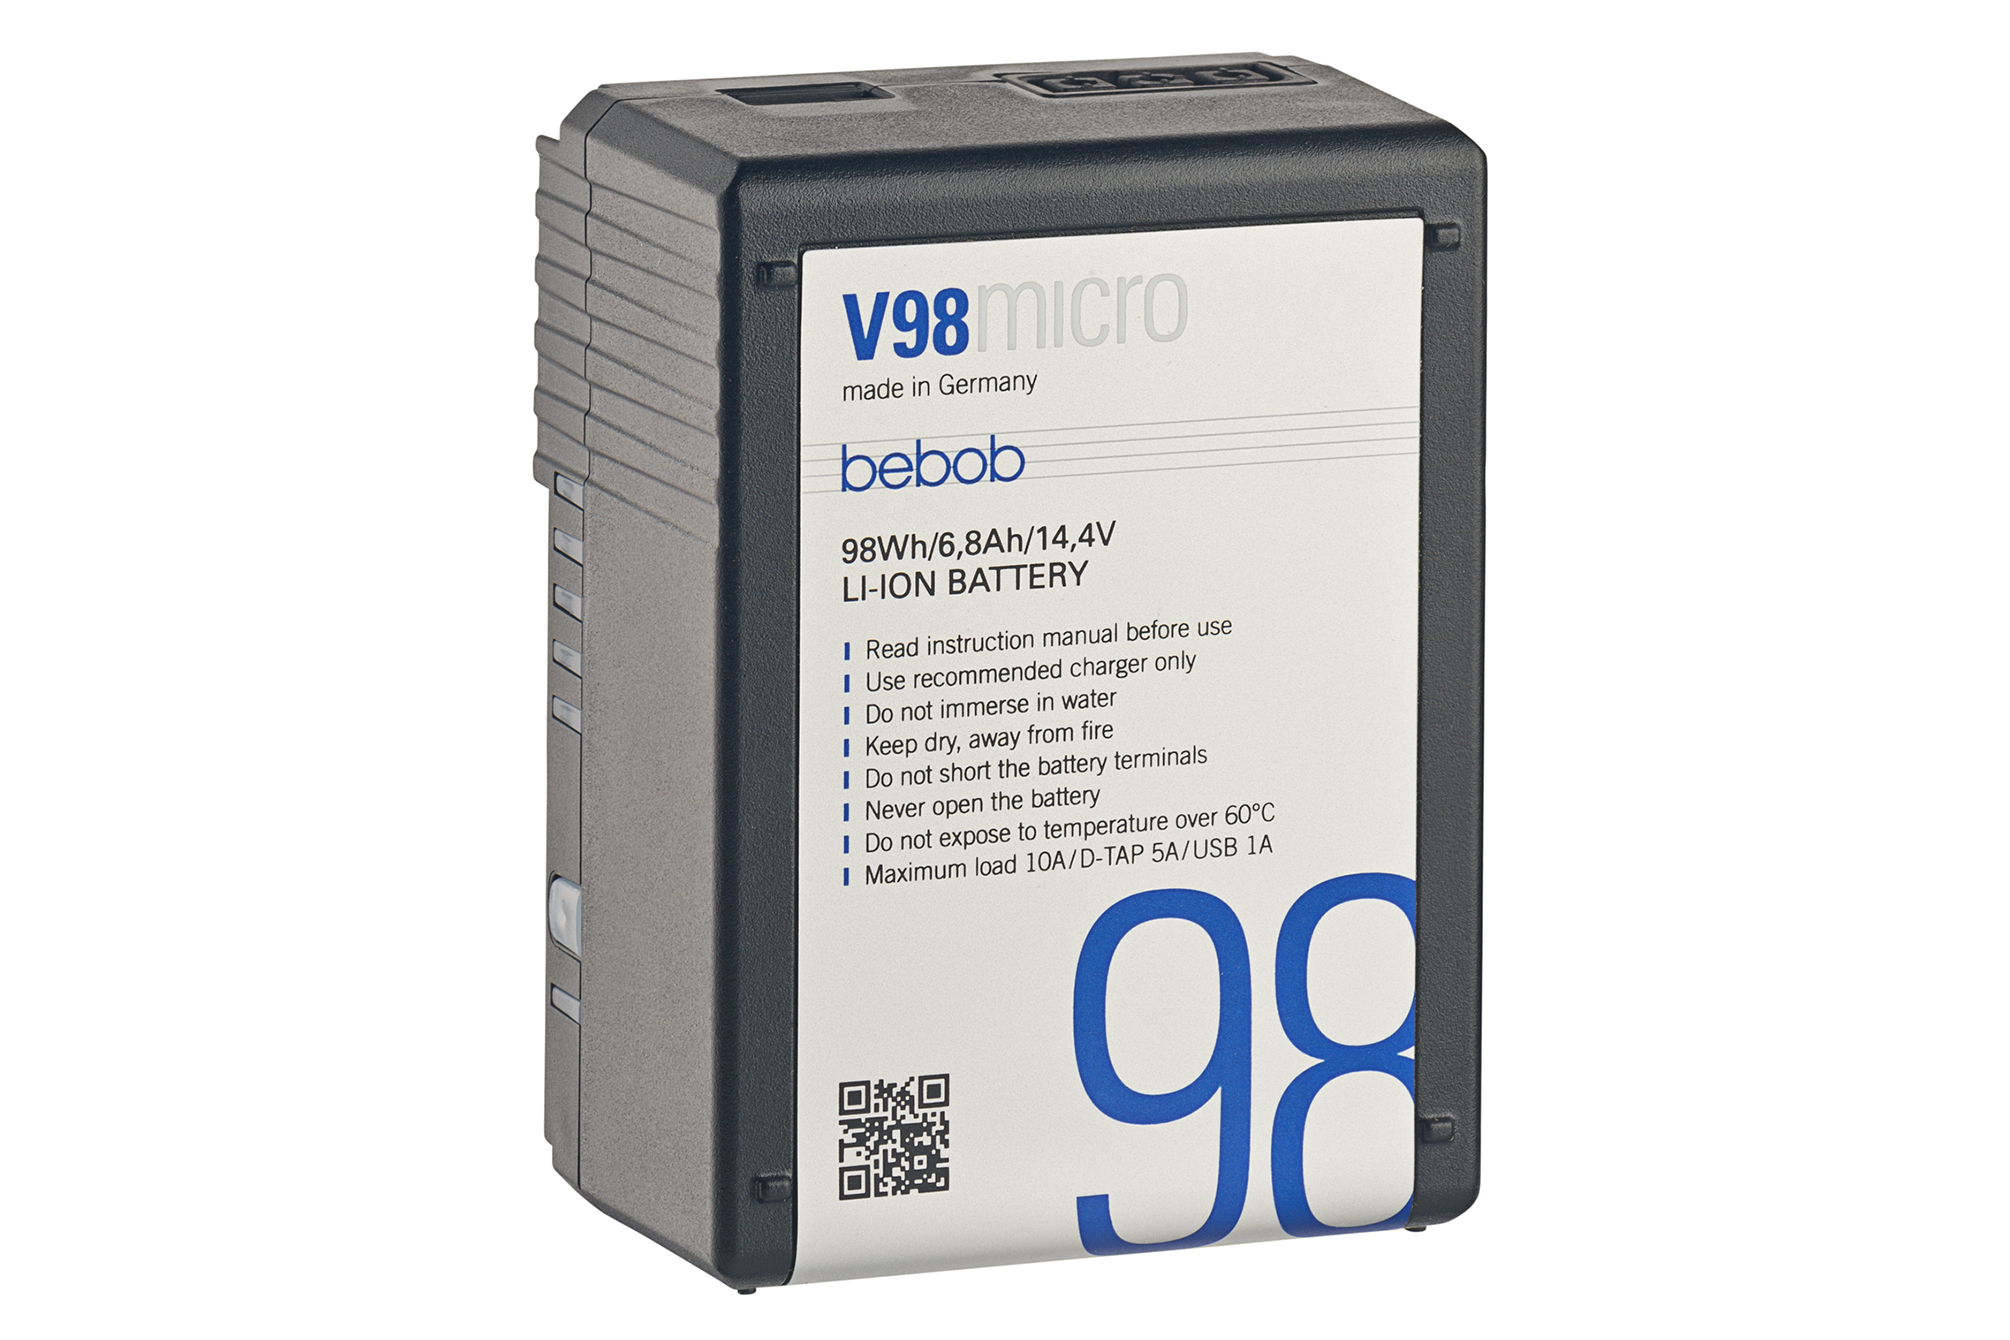 Bebob V 98 Micro